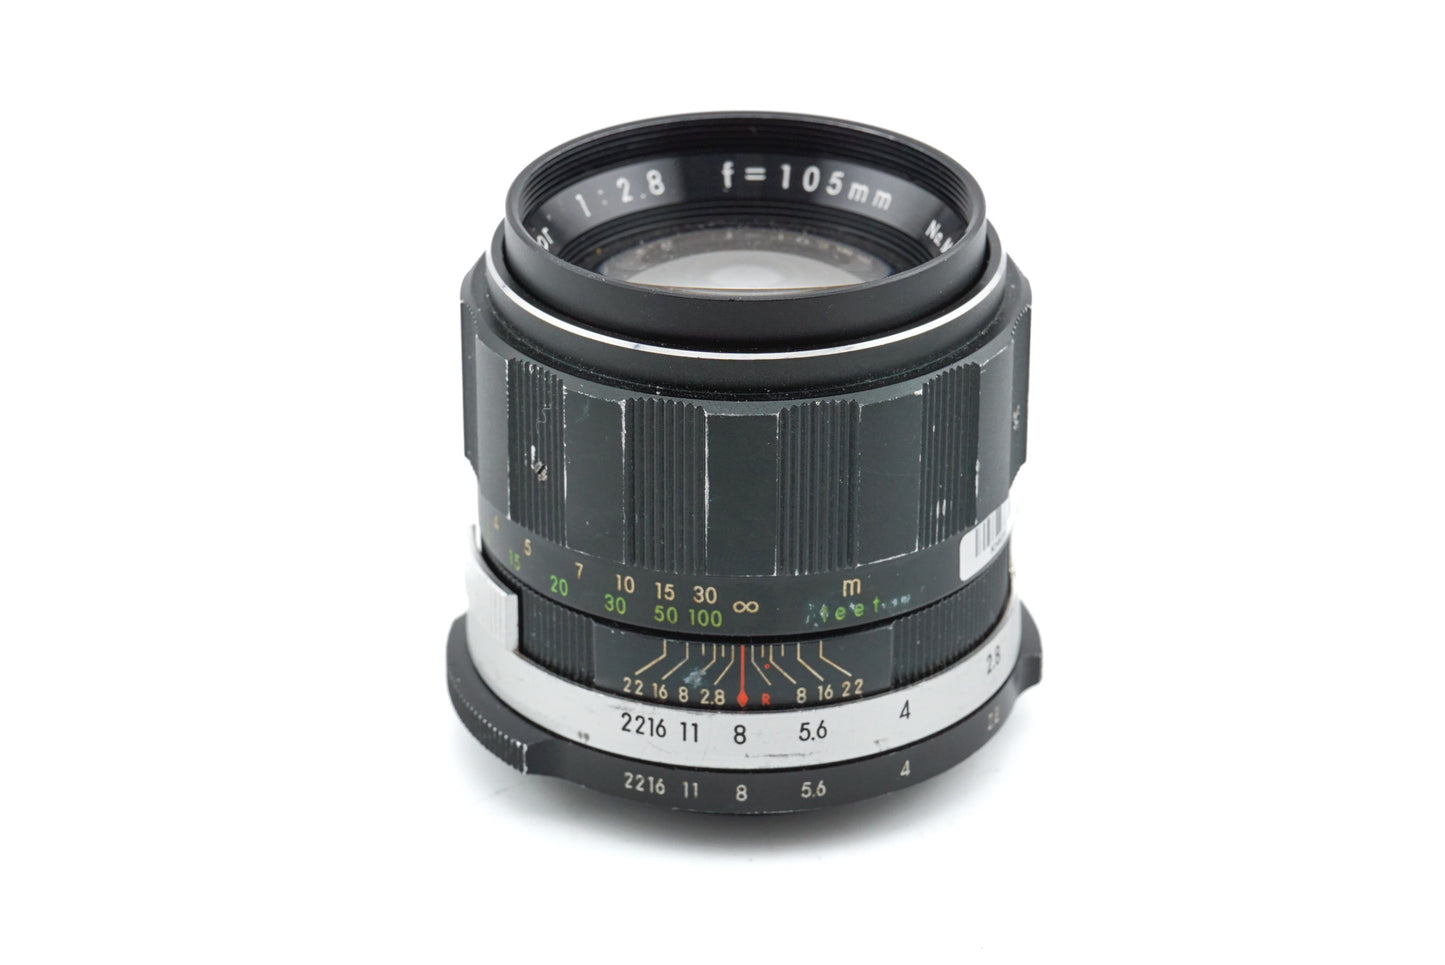 Soligor 105mm f2.8 Telephoto - Lens